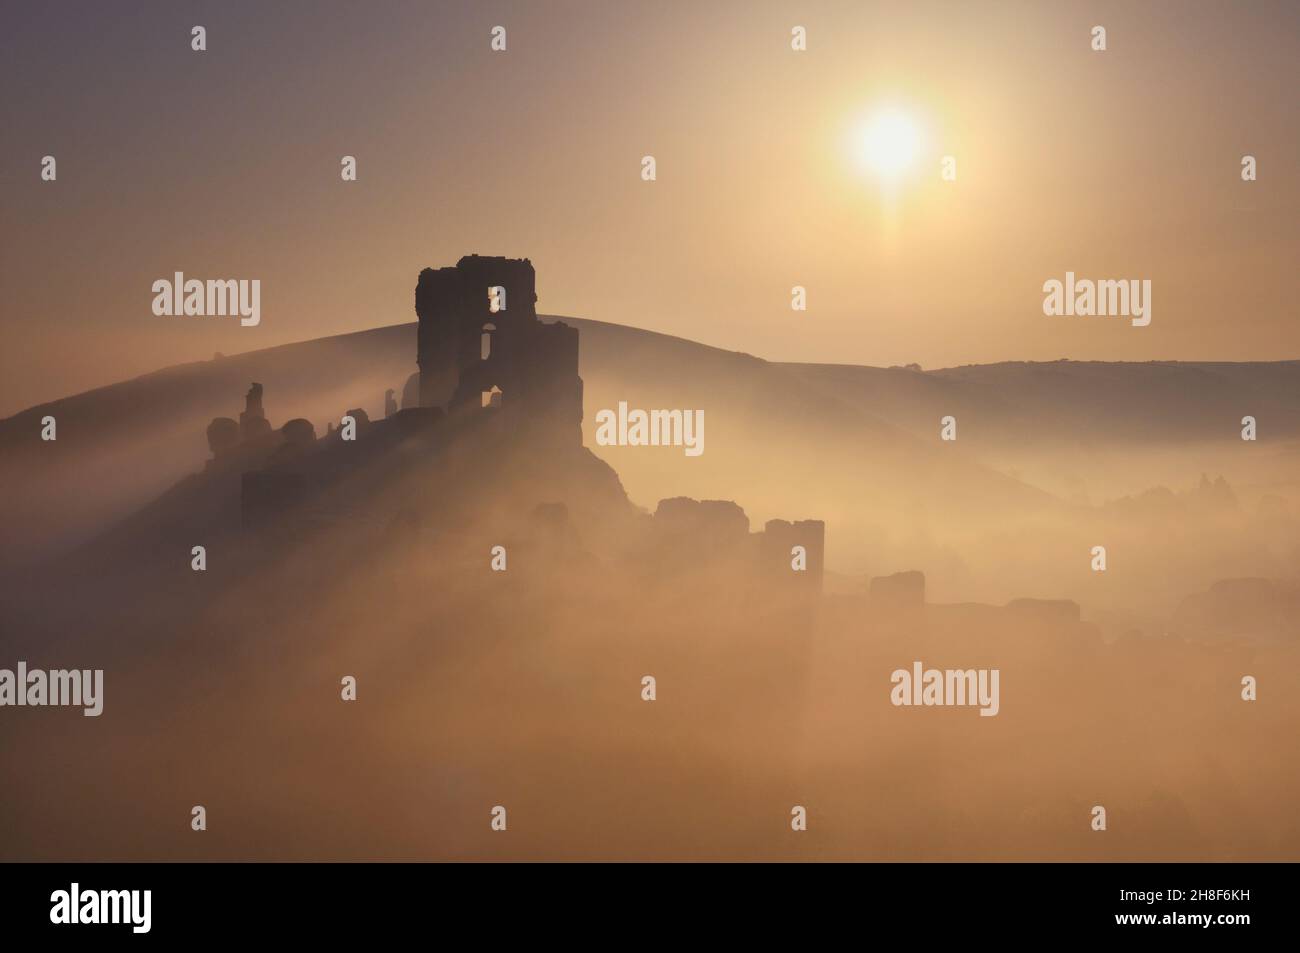 Die dramatischen Ruinen von Corfe Castle aus dem 11th. Jahrhundert, die bei Sonnenaufgang in Nebel gehüllt sind, Isle of Purbeck, Dorset, England, Großbritannien Stockfoto